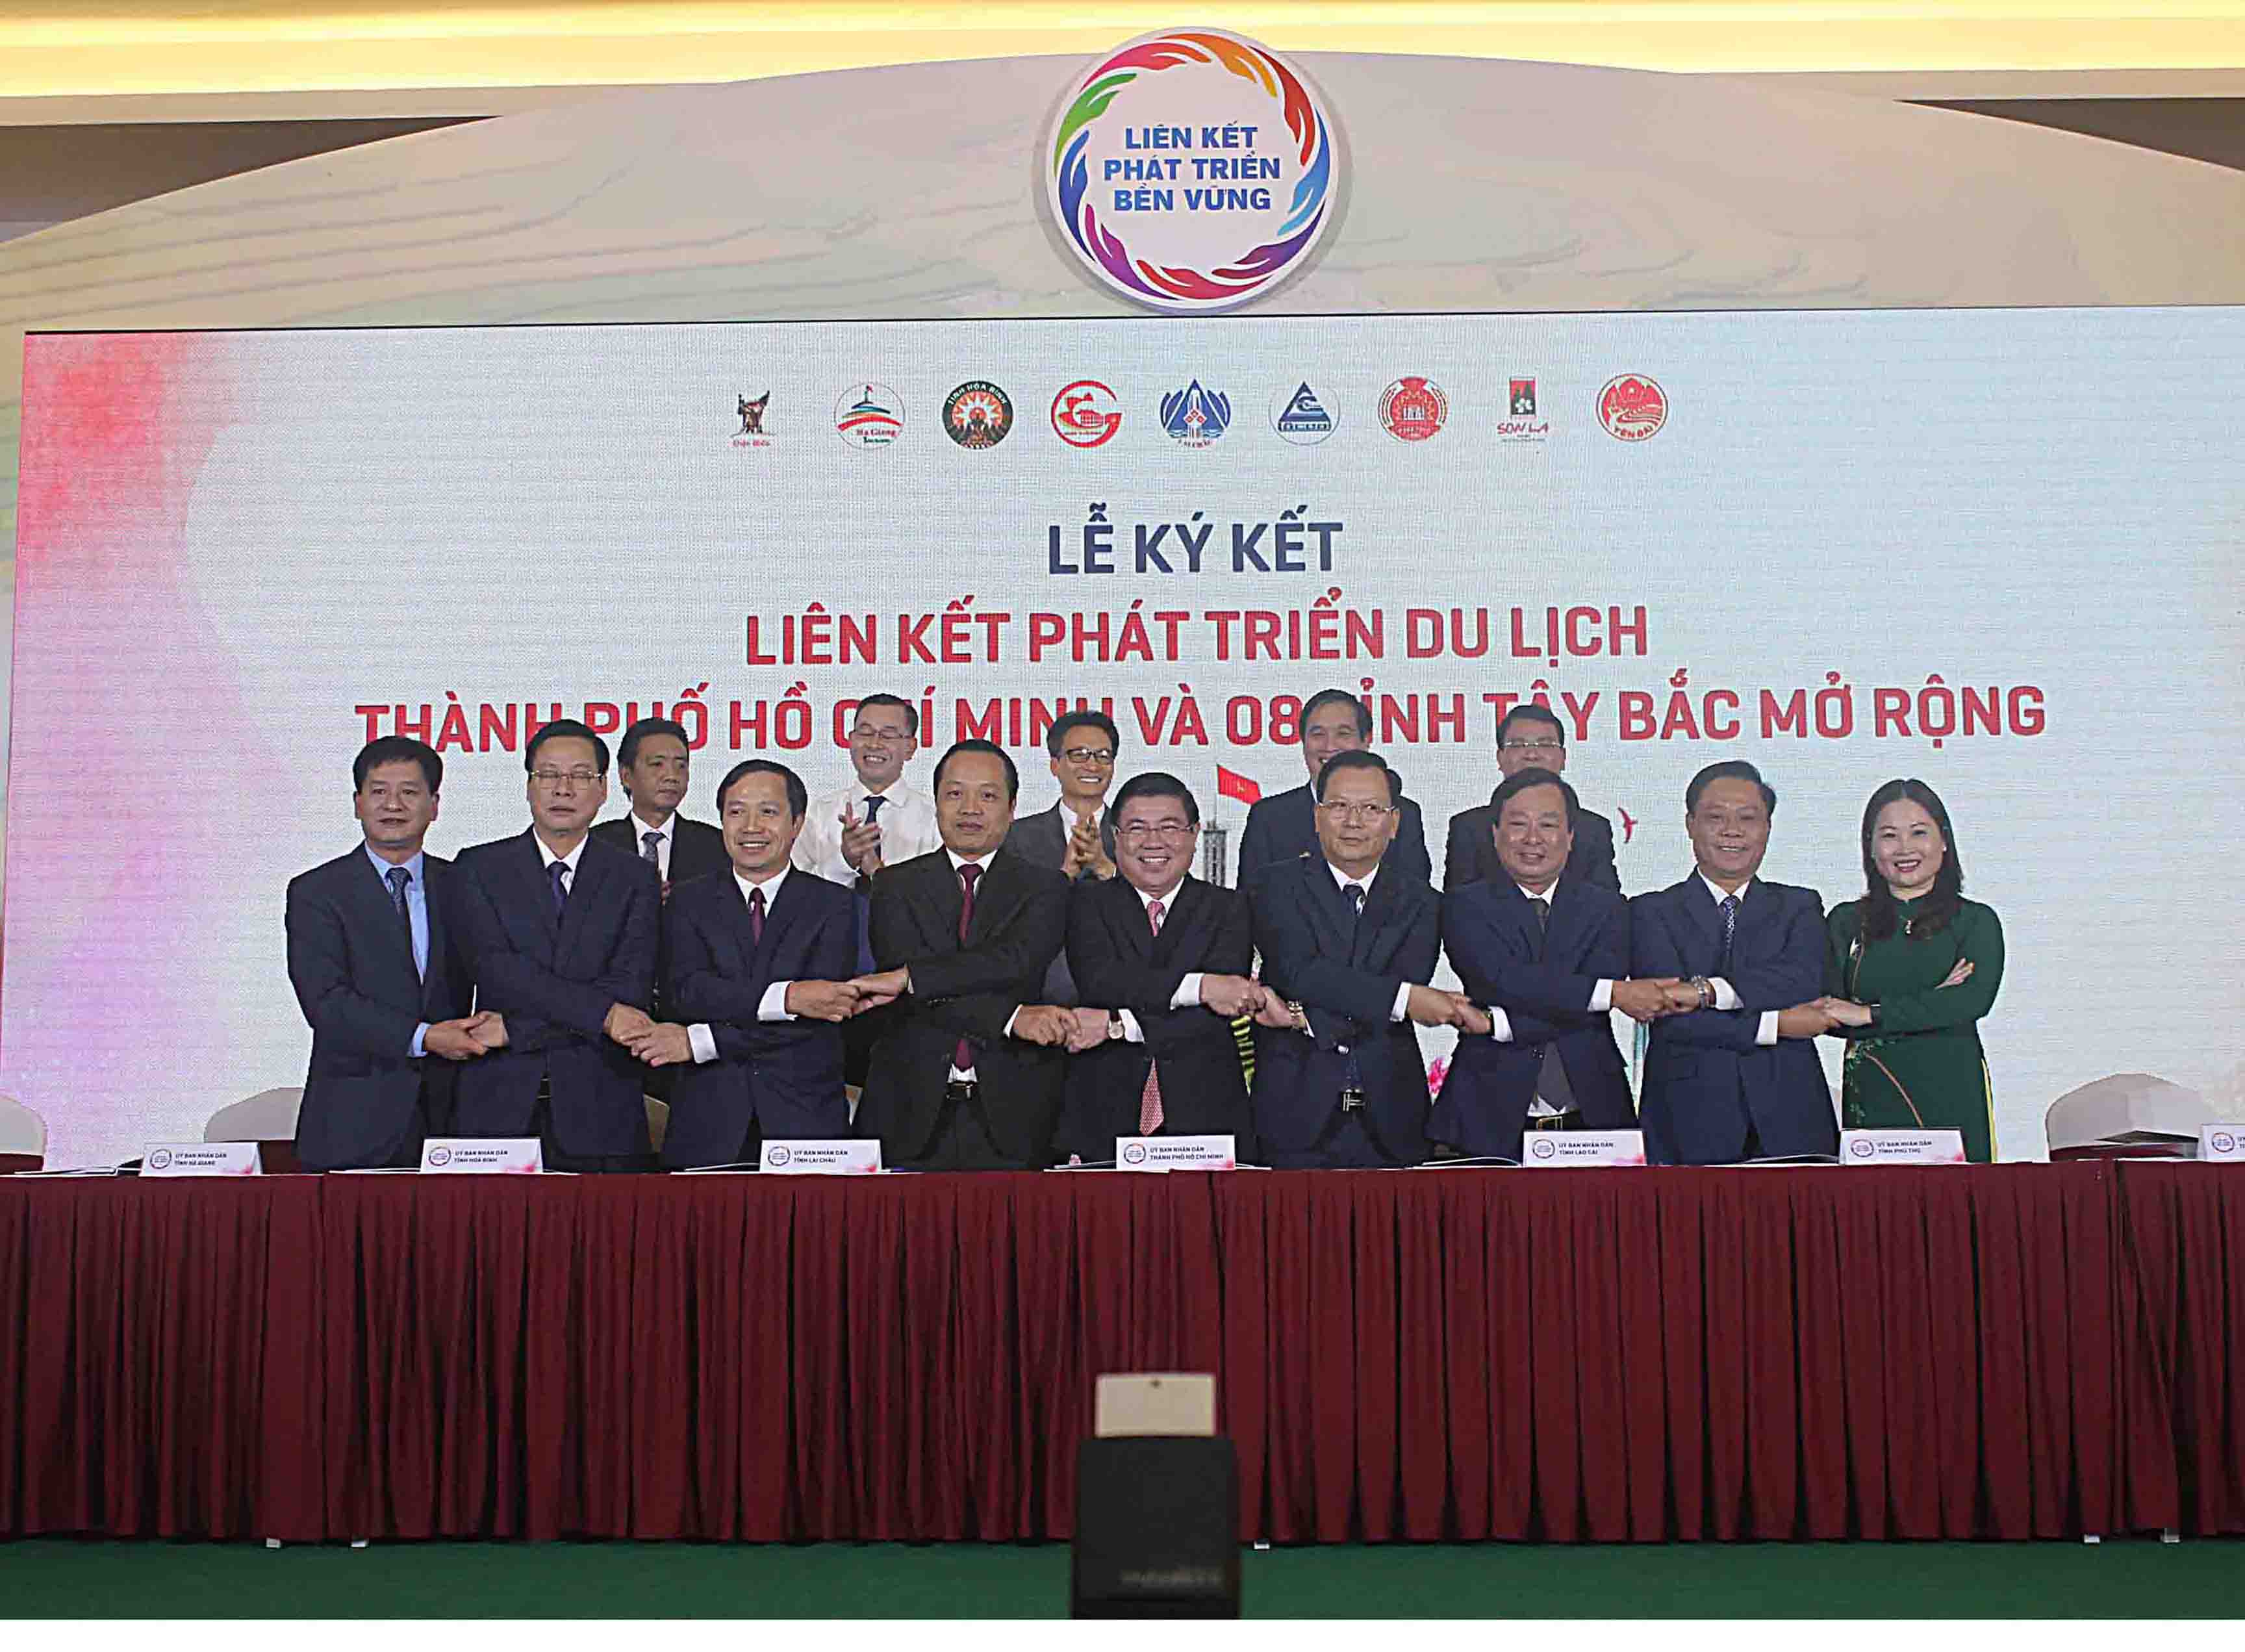 Đại diện lãnh đạo thành phố Hồ Chí Minh và 8 tỉnh Tây Bắc mở rộng bắt tay đoàn kết sau ký kết, thỏa thuận liên kết phát triển du lịch giai đoạn 2021- 2025.